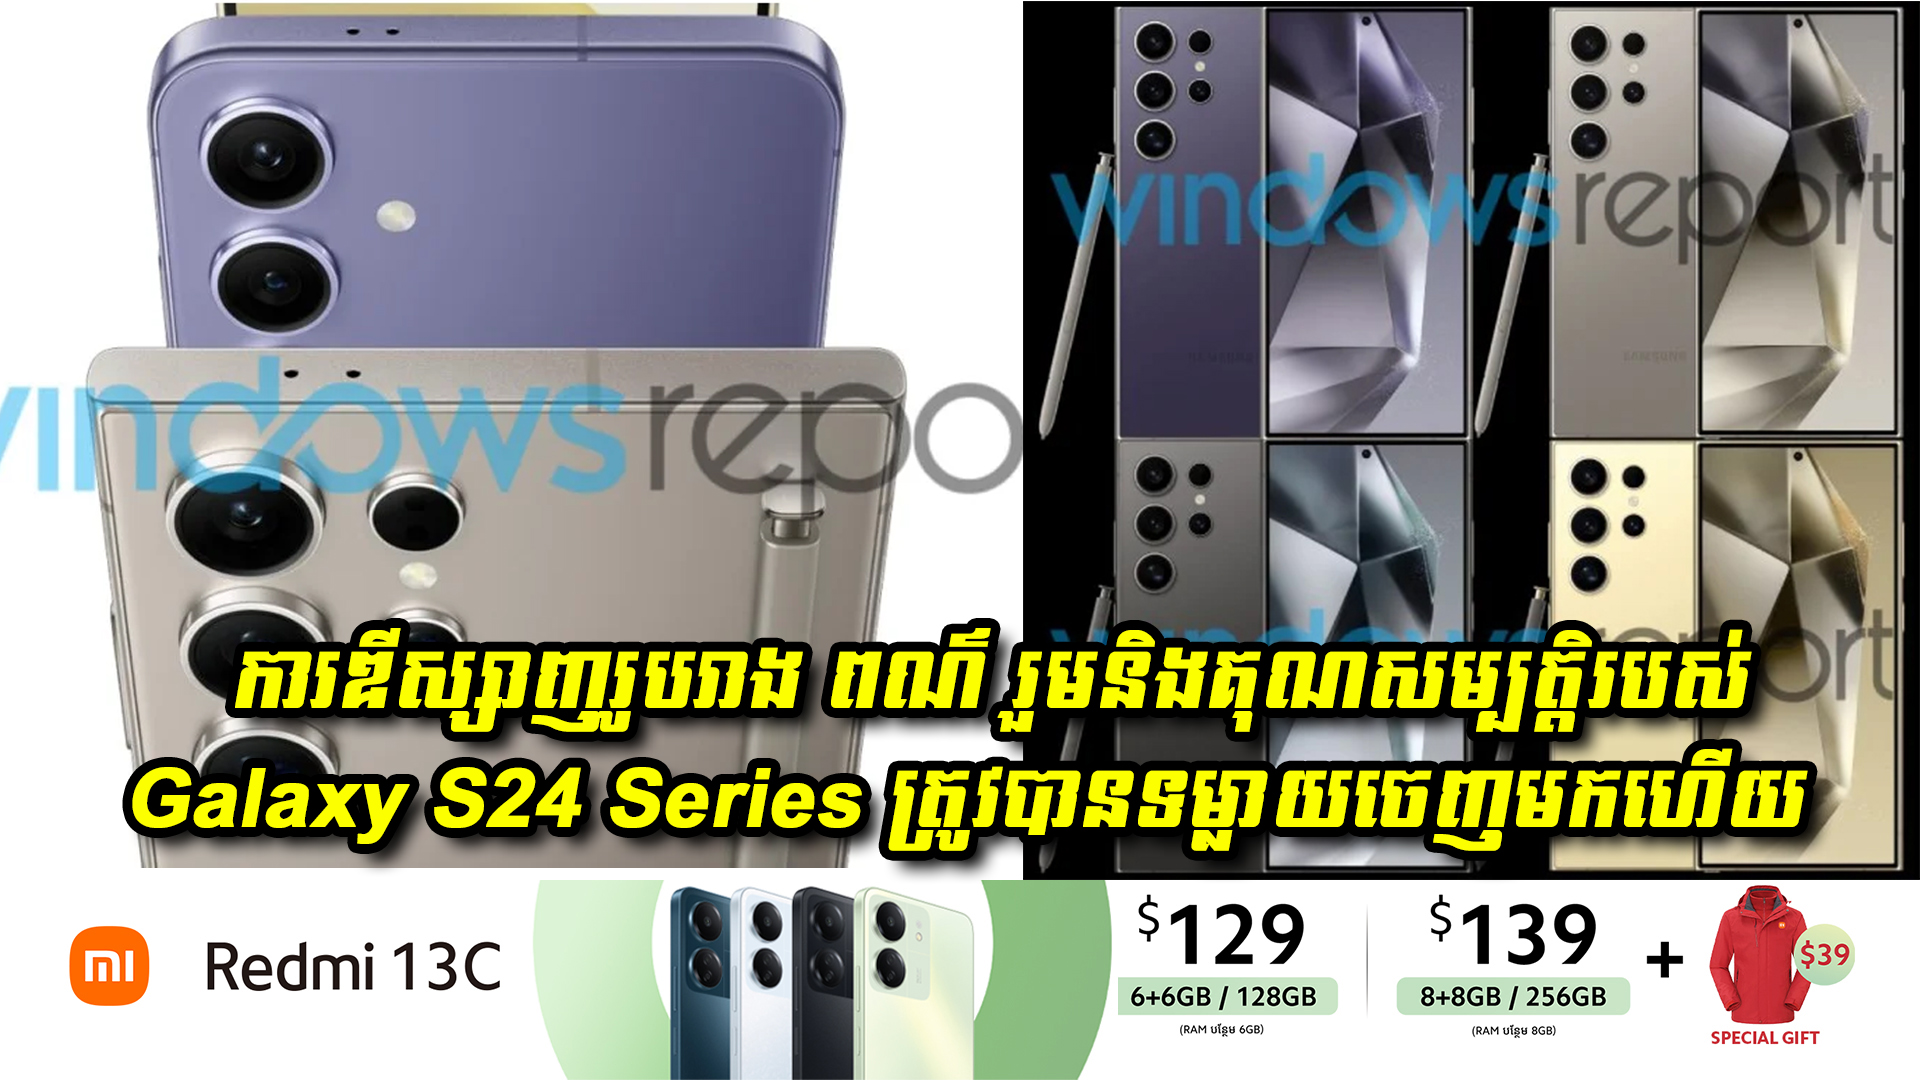 ការឌីស្សាញរូបរាង ពណ៌ រួមនិងគុណសម្បត្តិរបស់បងប្អូន Samsung Galaxy S24 Series ត្រូវបានទម្លាយចេញមកហើយ